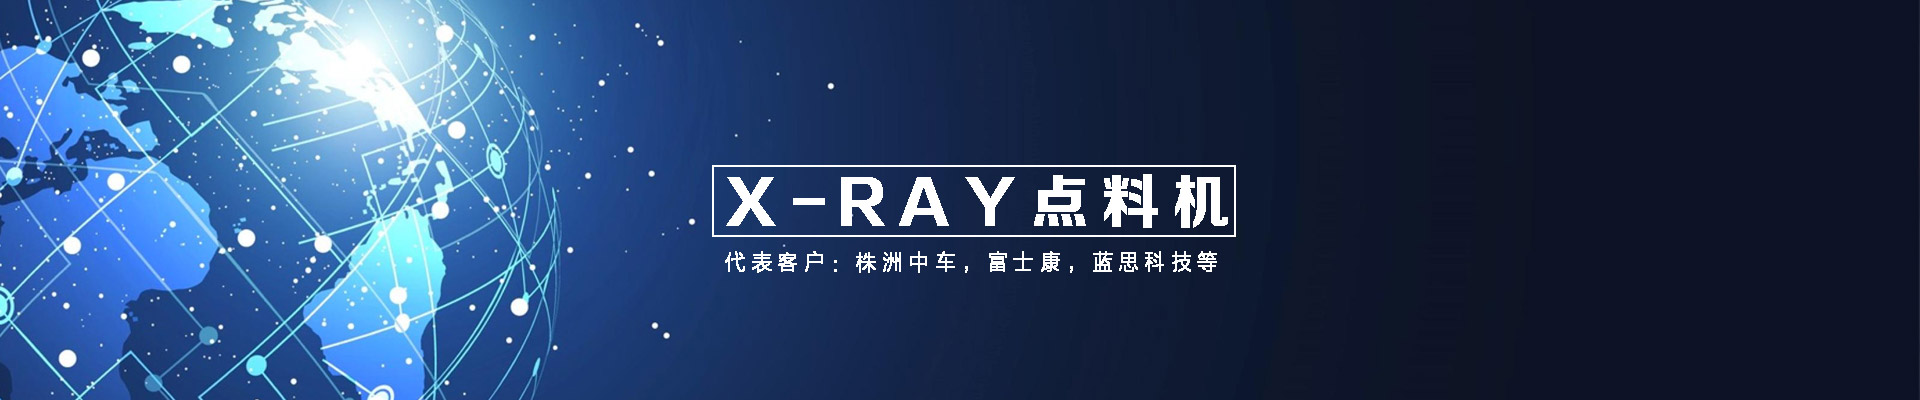 X-ray智能点料机,X-RAY设备